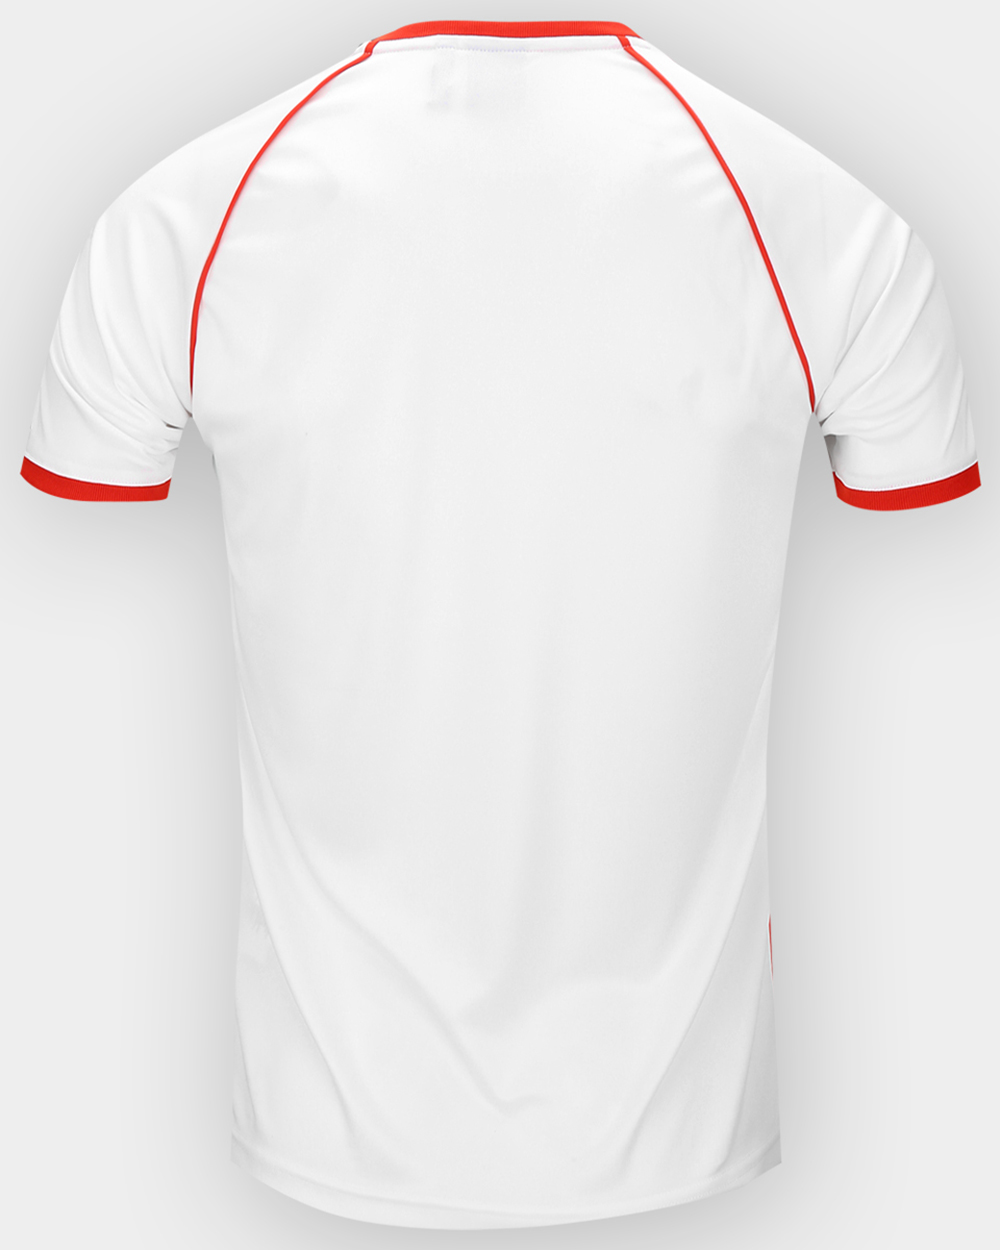 Camiseta adidas Originals River Plate